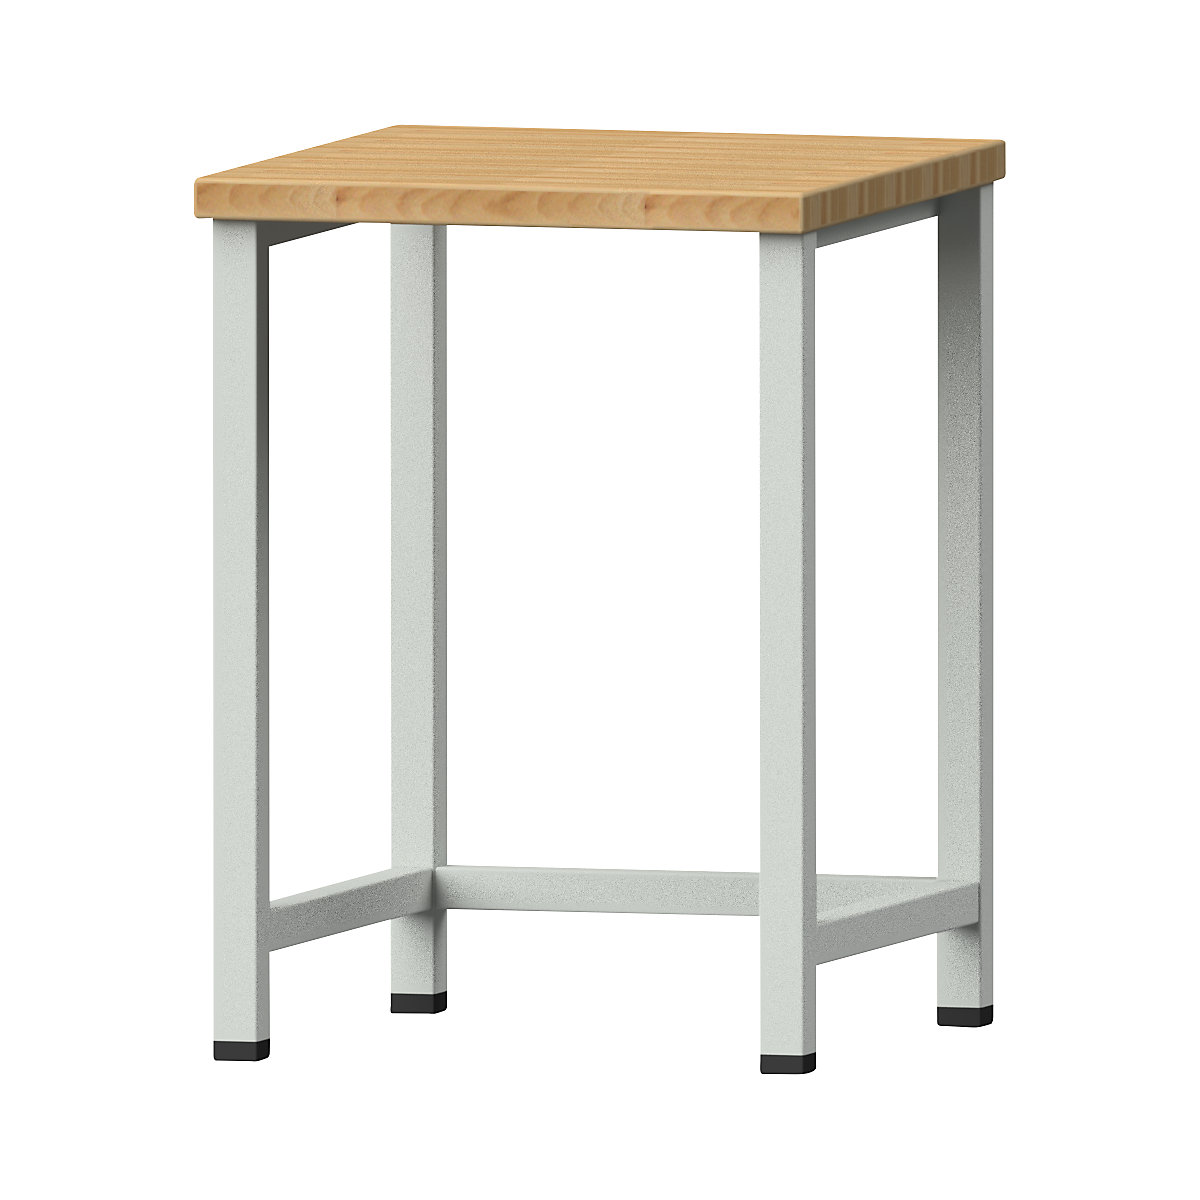 Kompaktowy stół warsztatowy - ANKE